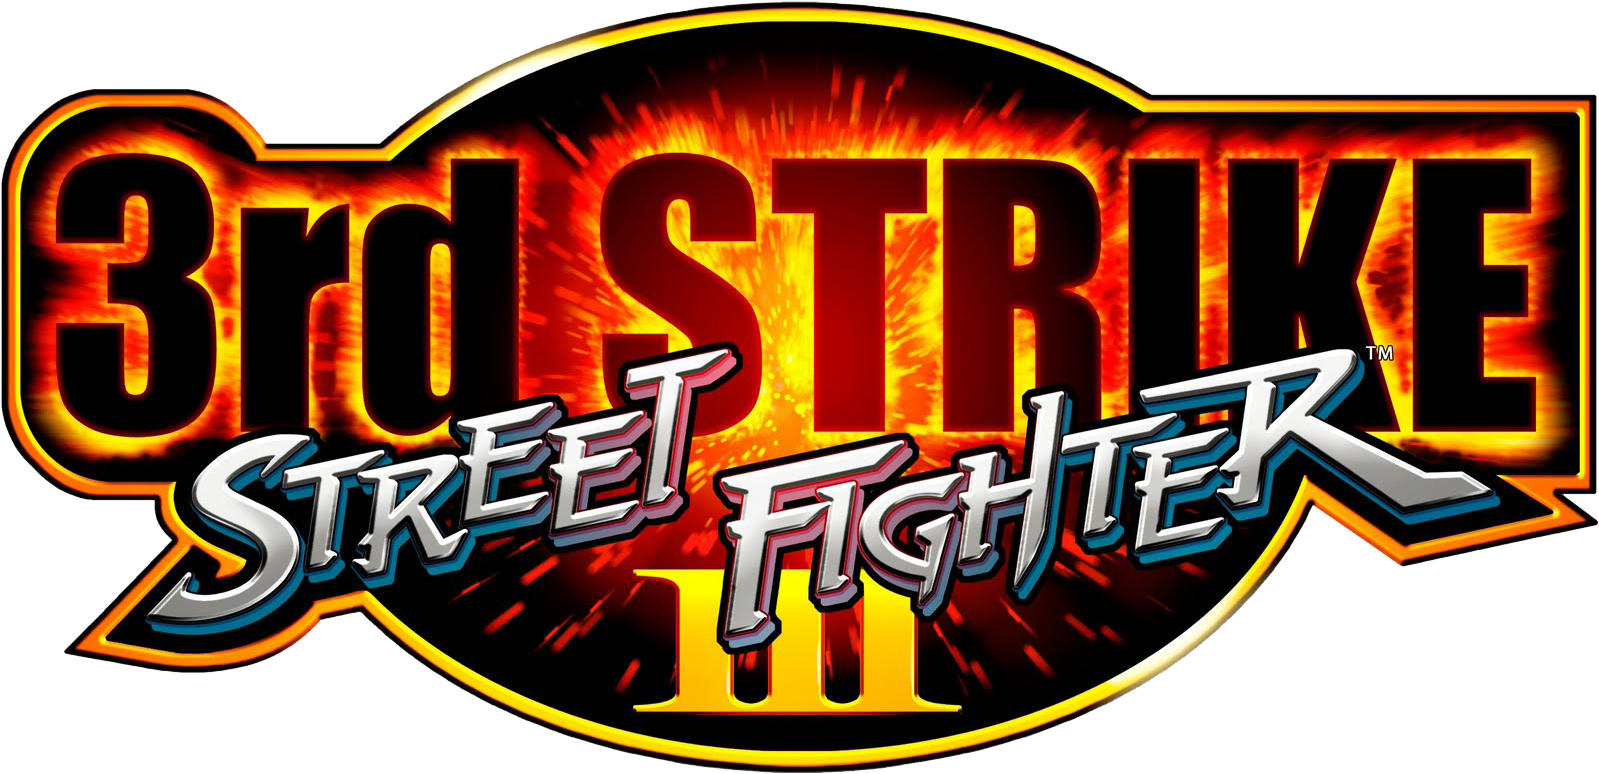 1999 - Street Fighter Iii Third Strike Logo (1600x1010)